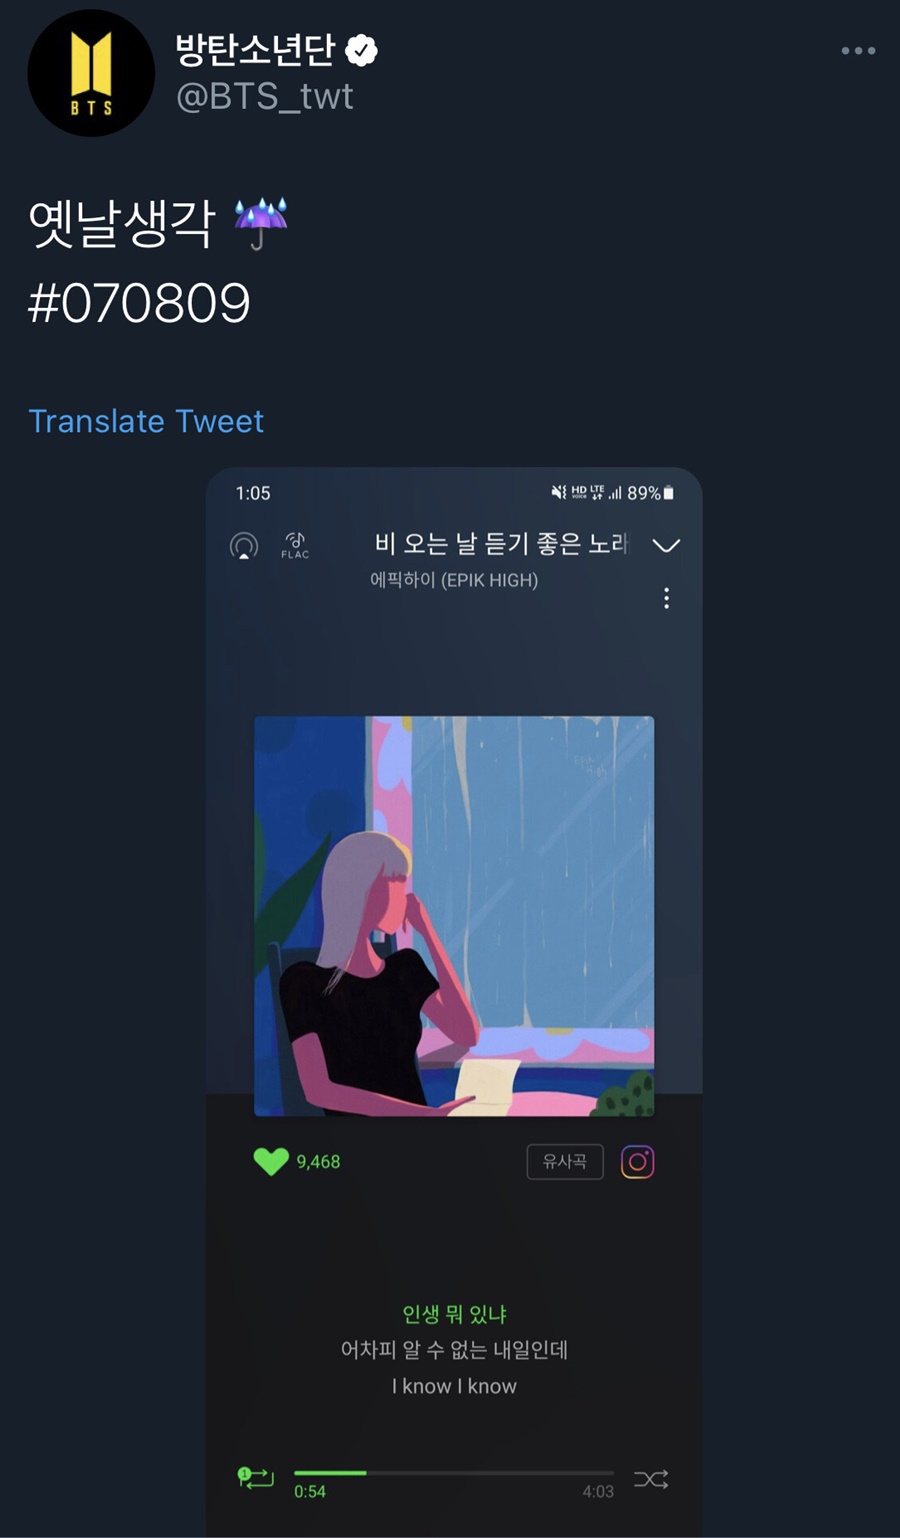 에픽하이 '비오는날듣기좋은노래' 추천한 BTS / 사진: 방탄소년단 트위터 캡처